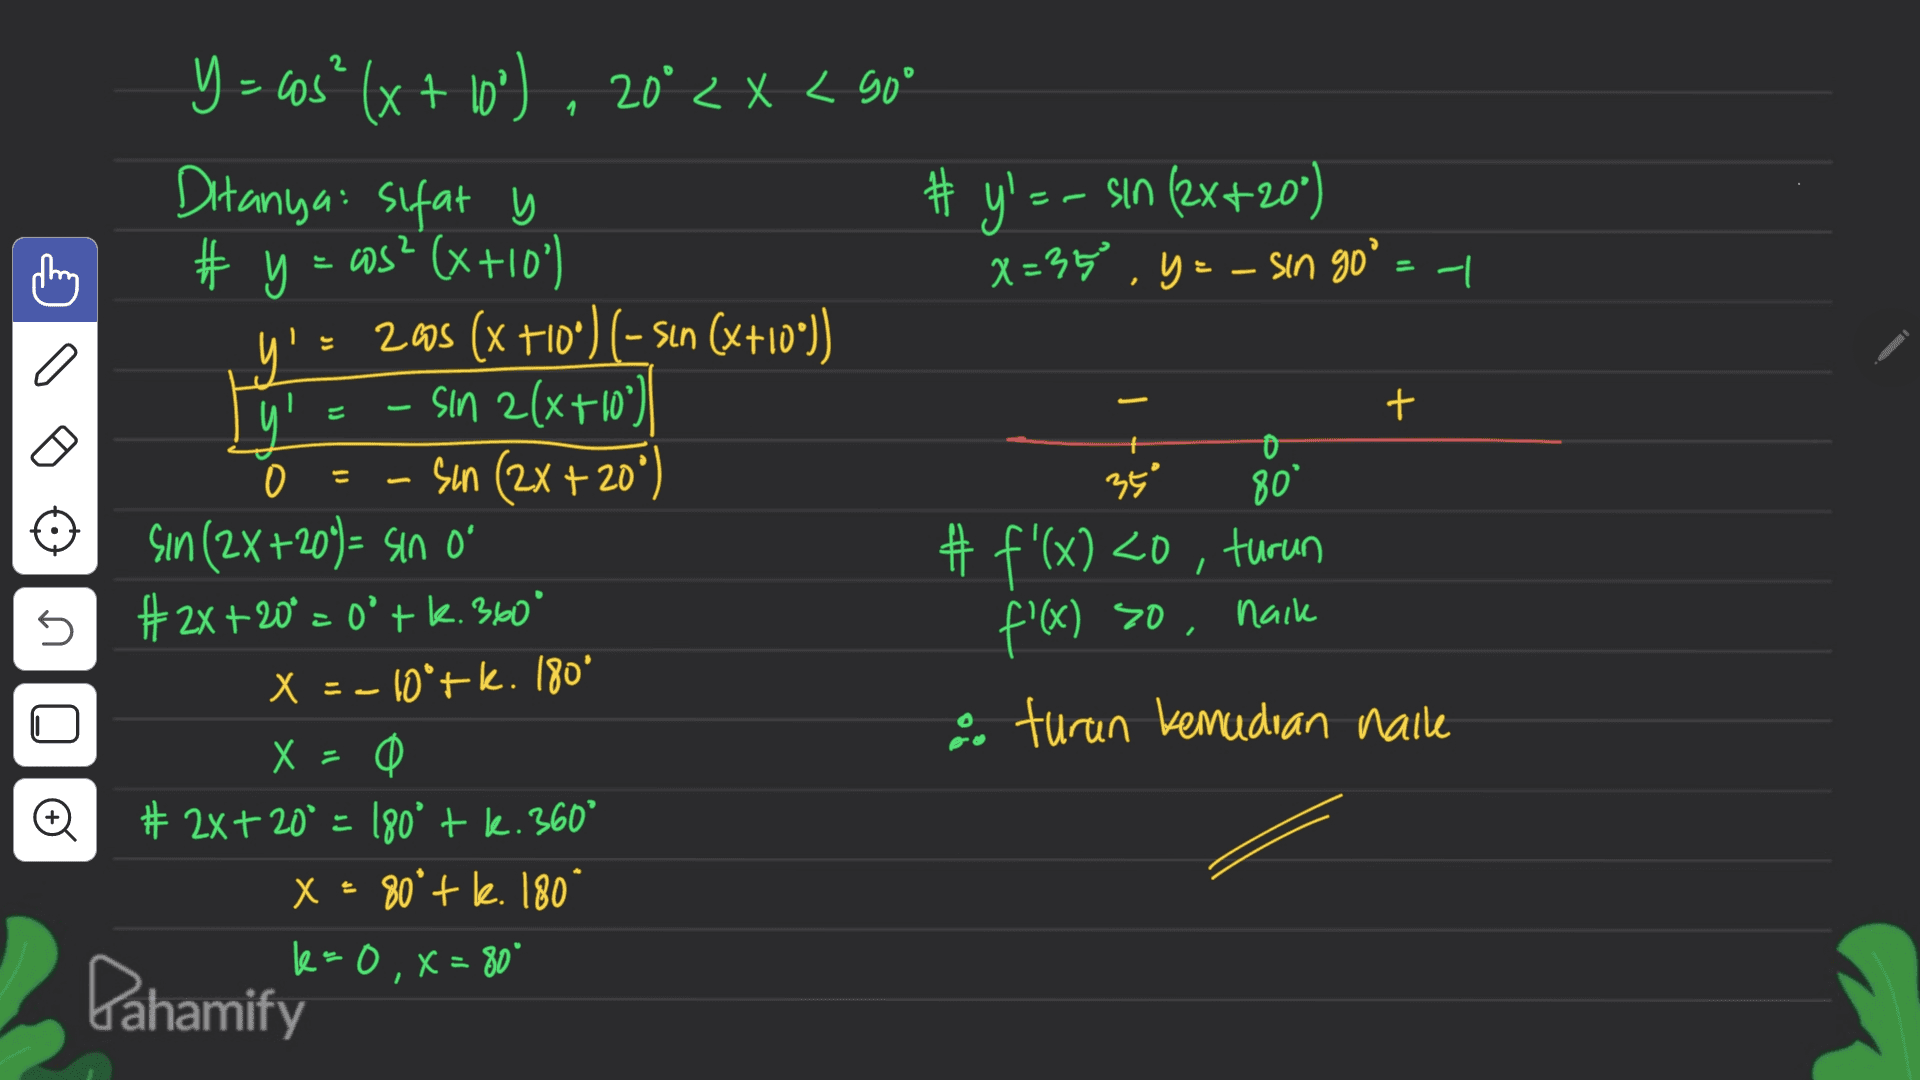 2 1. Ditanya sifat y = I C a + = E = Y = sas" (x + 10") . 20* < X < 90* # y' -- sin (2x+20") # y = cos? (x+10) x=35 .y = - sin go = | 2008 (x +10°) (-sın (x+10")) sin 2(x+10°) 0 Sun (2x +20°) 350 80 Sin (2X+20) = sin o #f'(x) <0, turun #2x+20° = o'tk. 360° nack X = -10*+k. 180° O turun kemudian haile X = 0 0 # 2x+ 20° = 180° + l. 360° X = 80° + k. 180 k=0, x=80" 5 f'(x) so, © Pahamify 